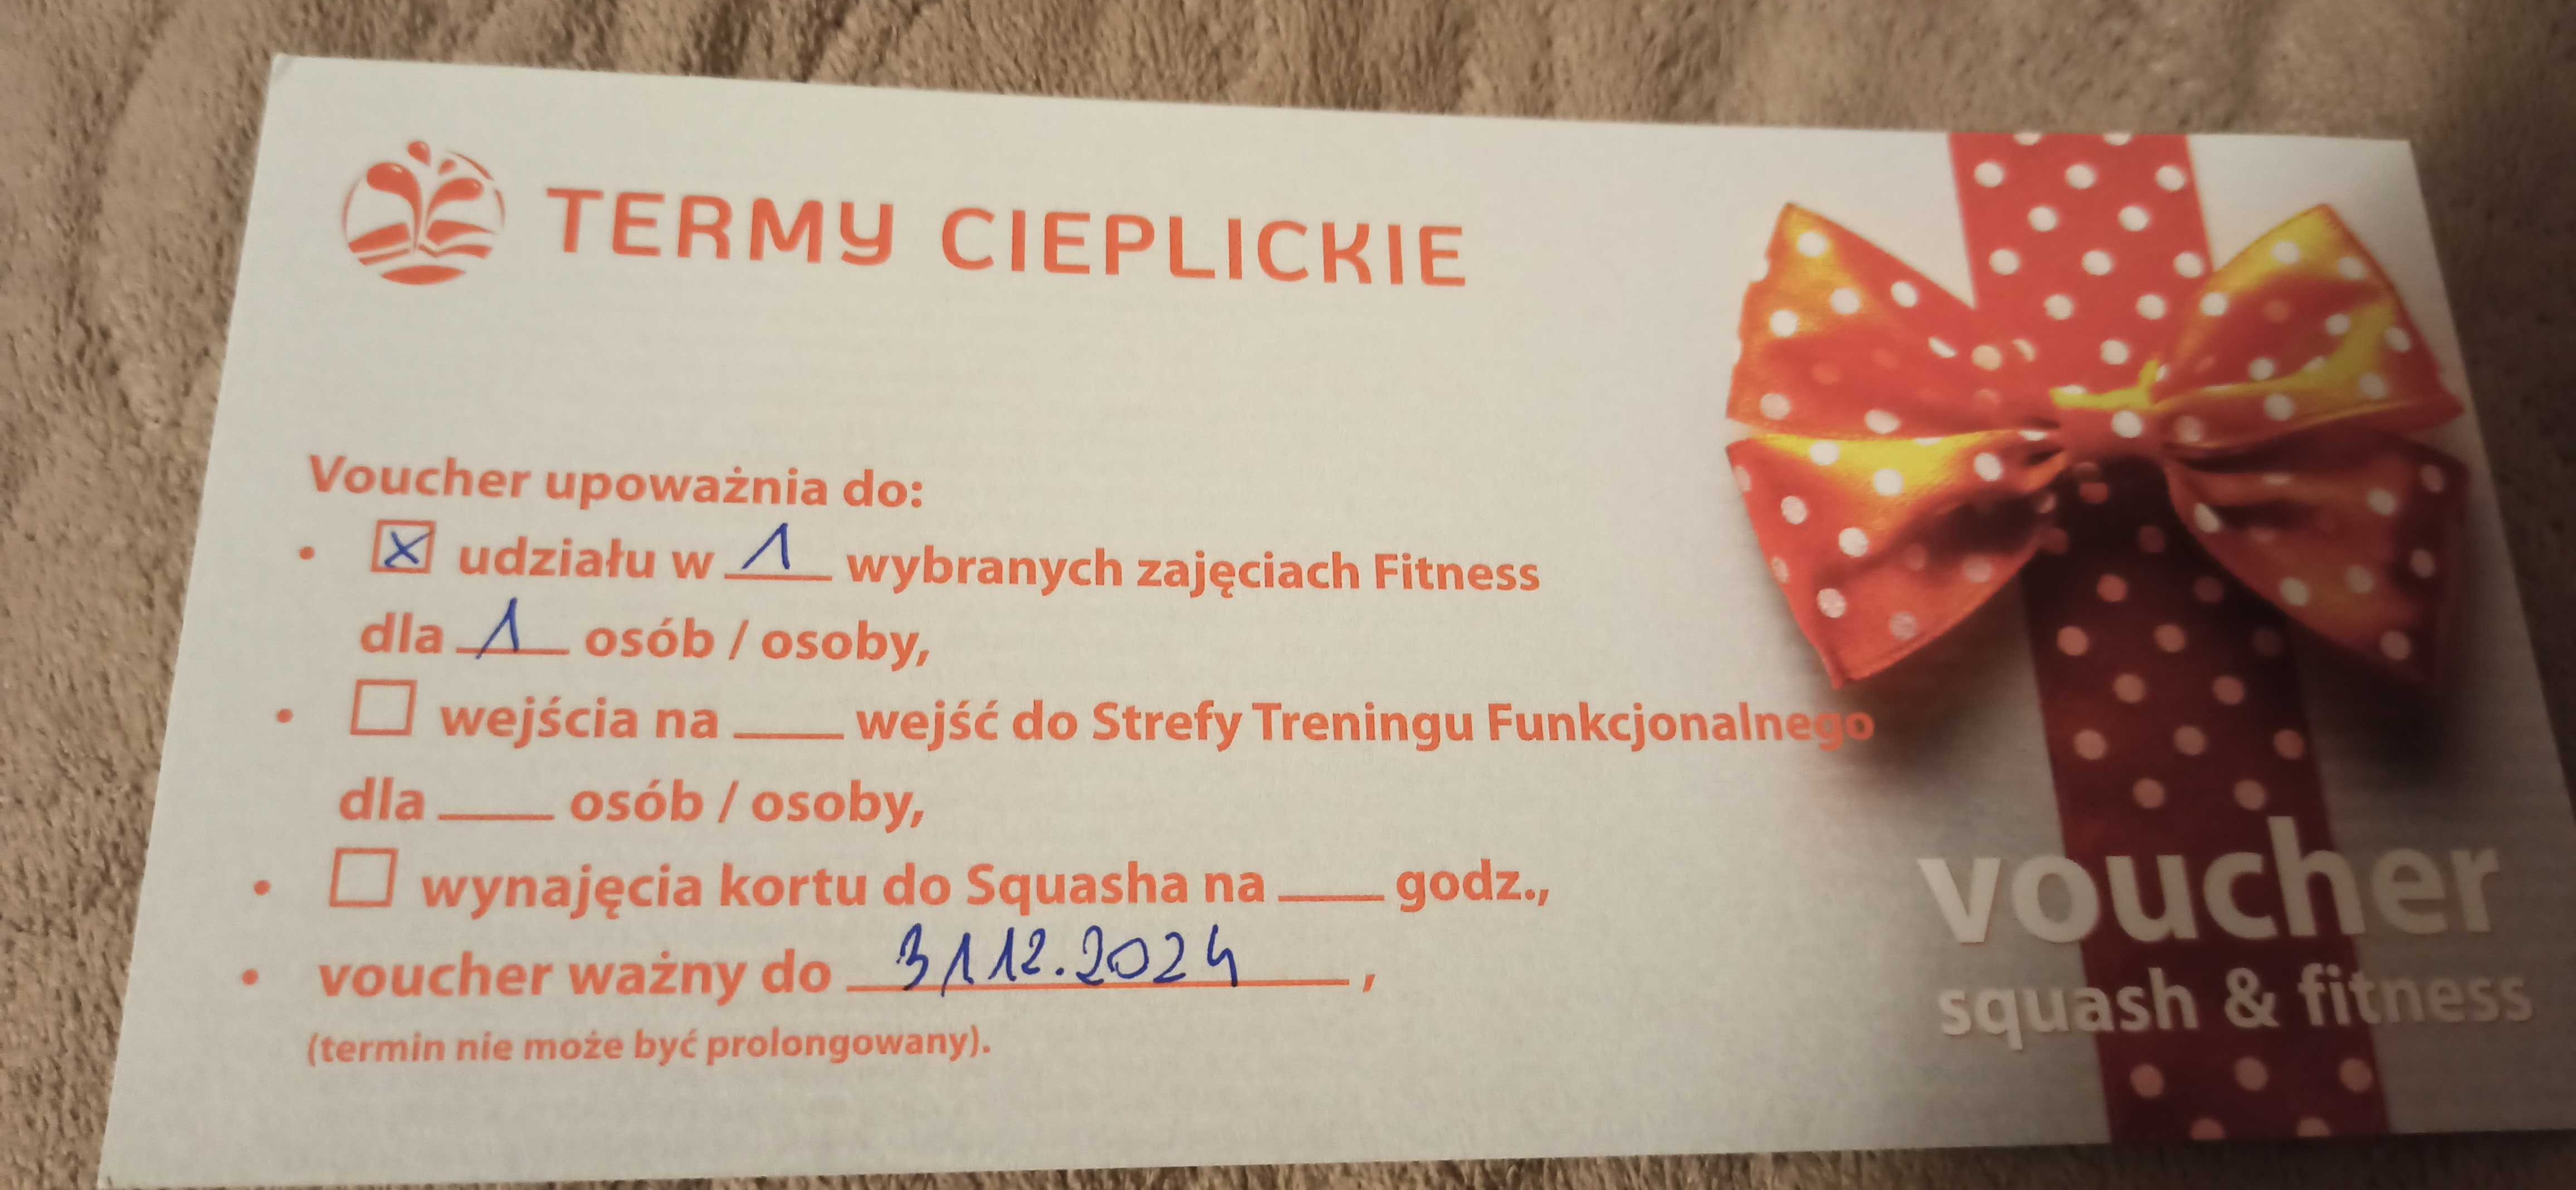 Voucher Termy Cieplickie - wybrane zajęcia fitness.